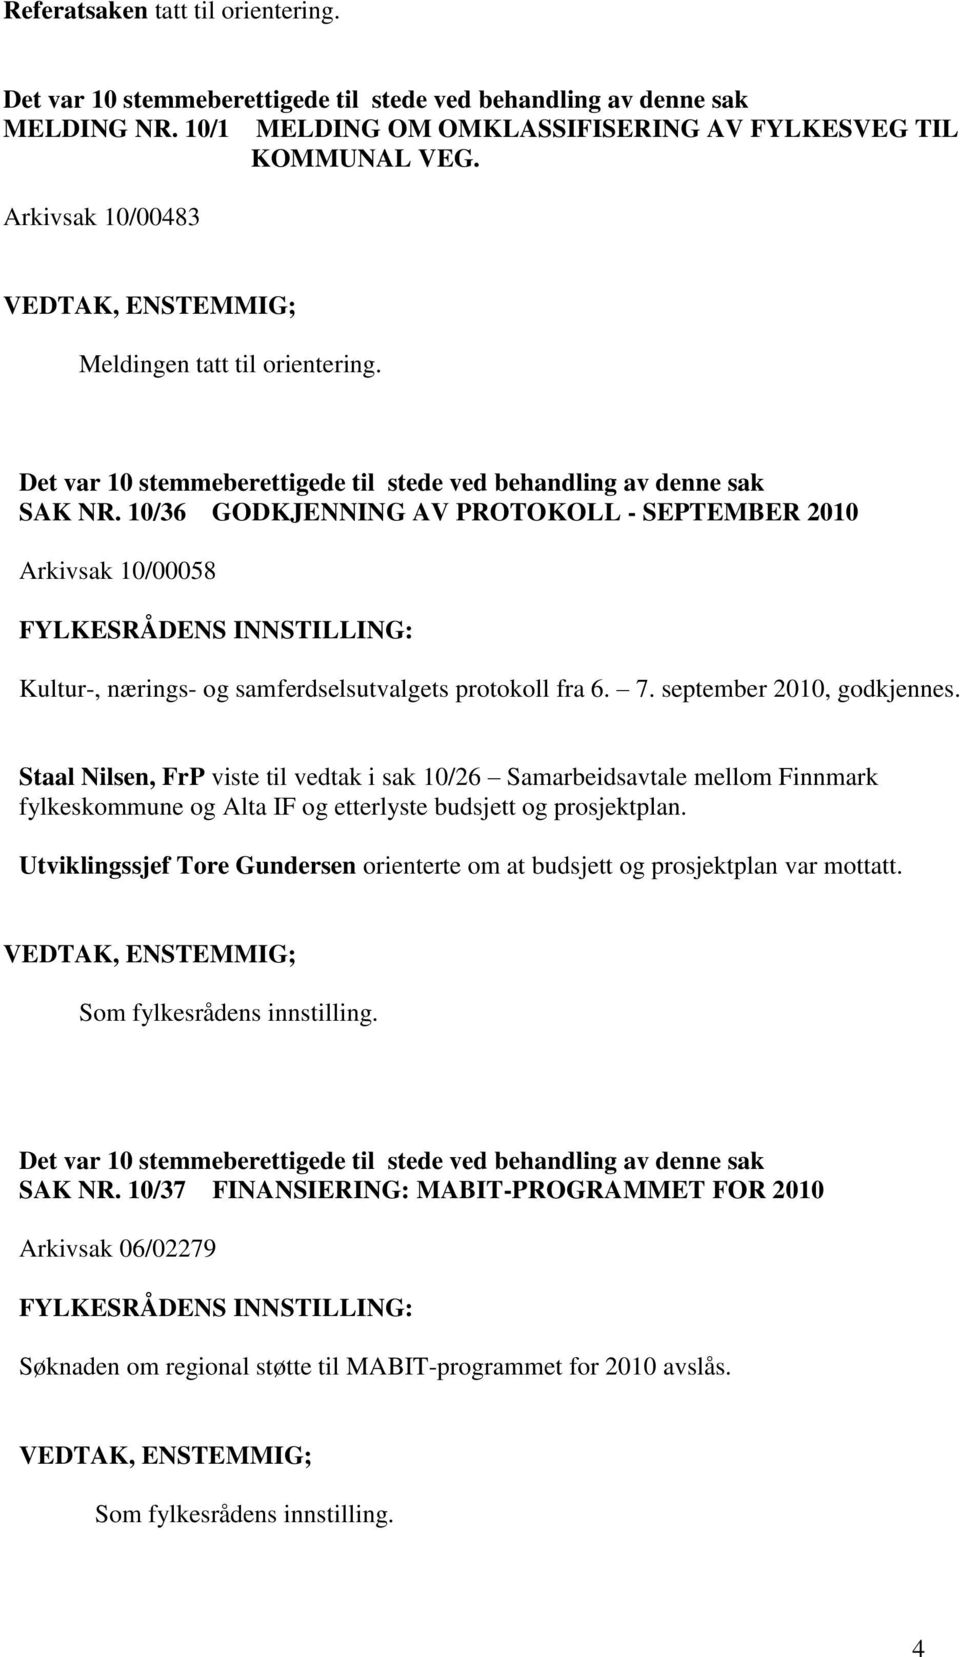 10/36 GODKJENNING AV PROTOKOLL - SEPTEMBER 2010 Arkivsak 10/00058 Kultur-, nærings- og samferdselsutvalgets protokoll fra 6. 7. september 2010, godkjennes.